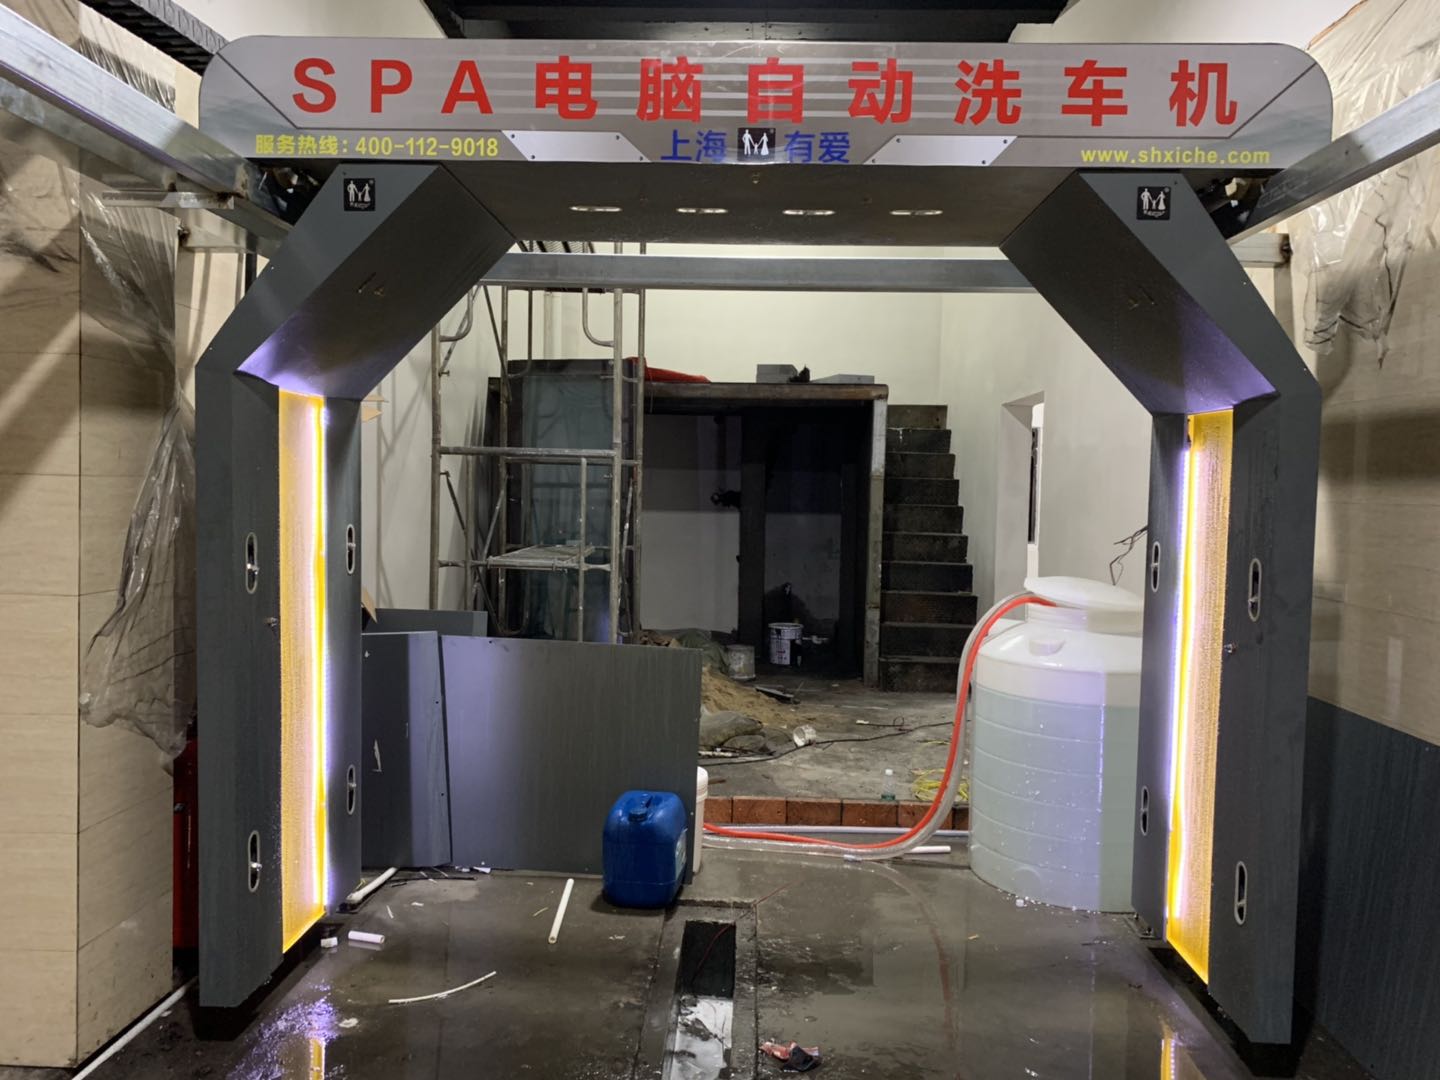 上海有愛自動洗車機-智能自動洗車機-自動洗車機經濟實用